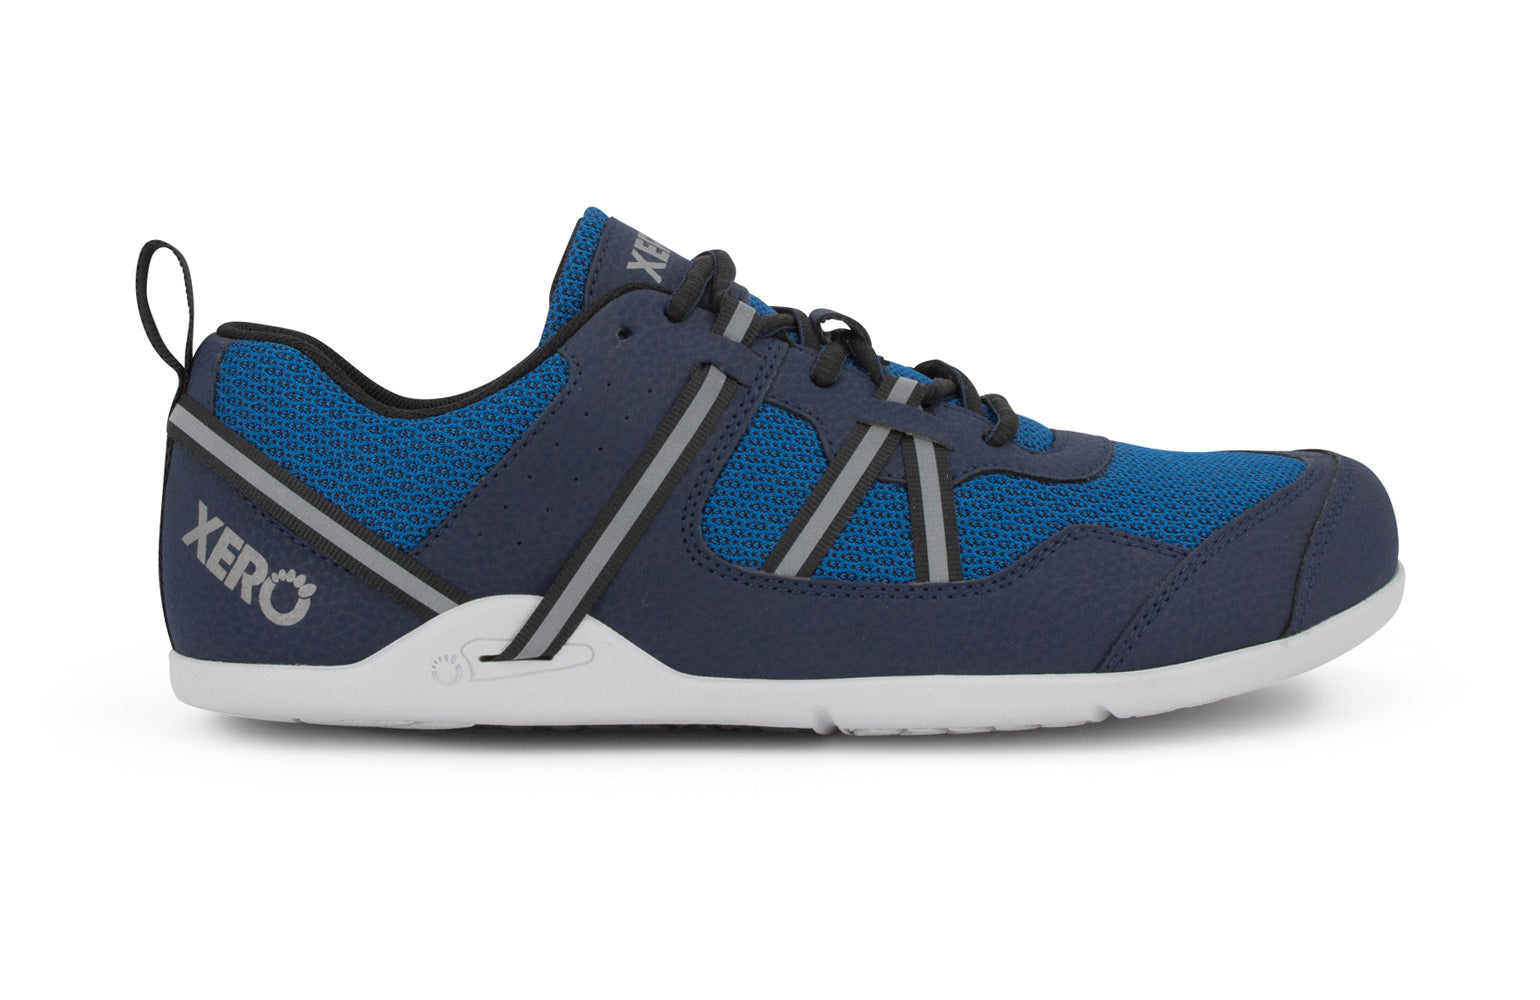 Xero Shoes Prio barfods løbesko/træningssko til mænd i farven mykonos blue, yderside